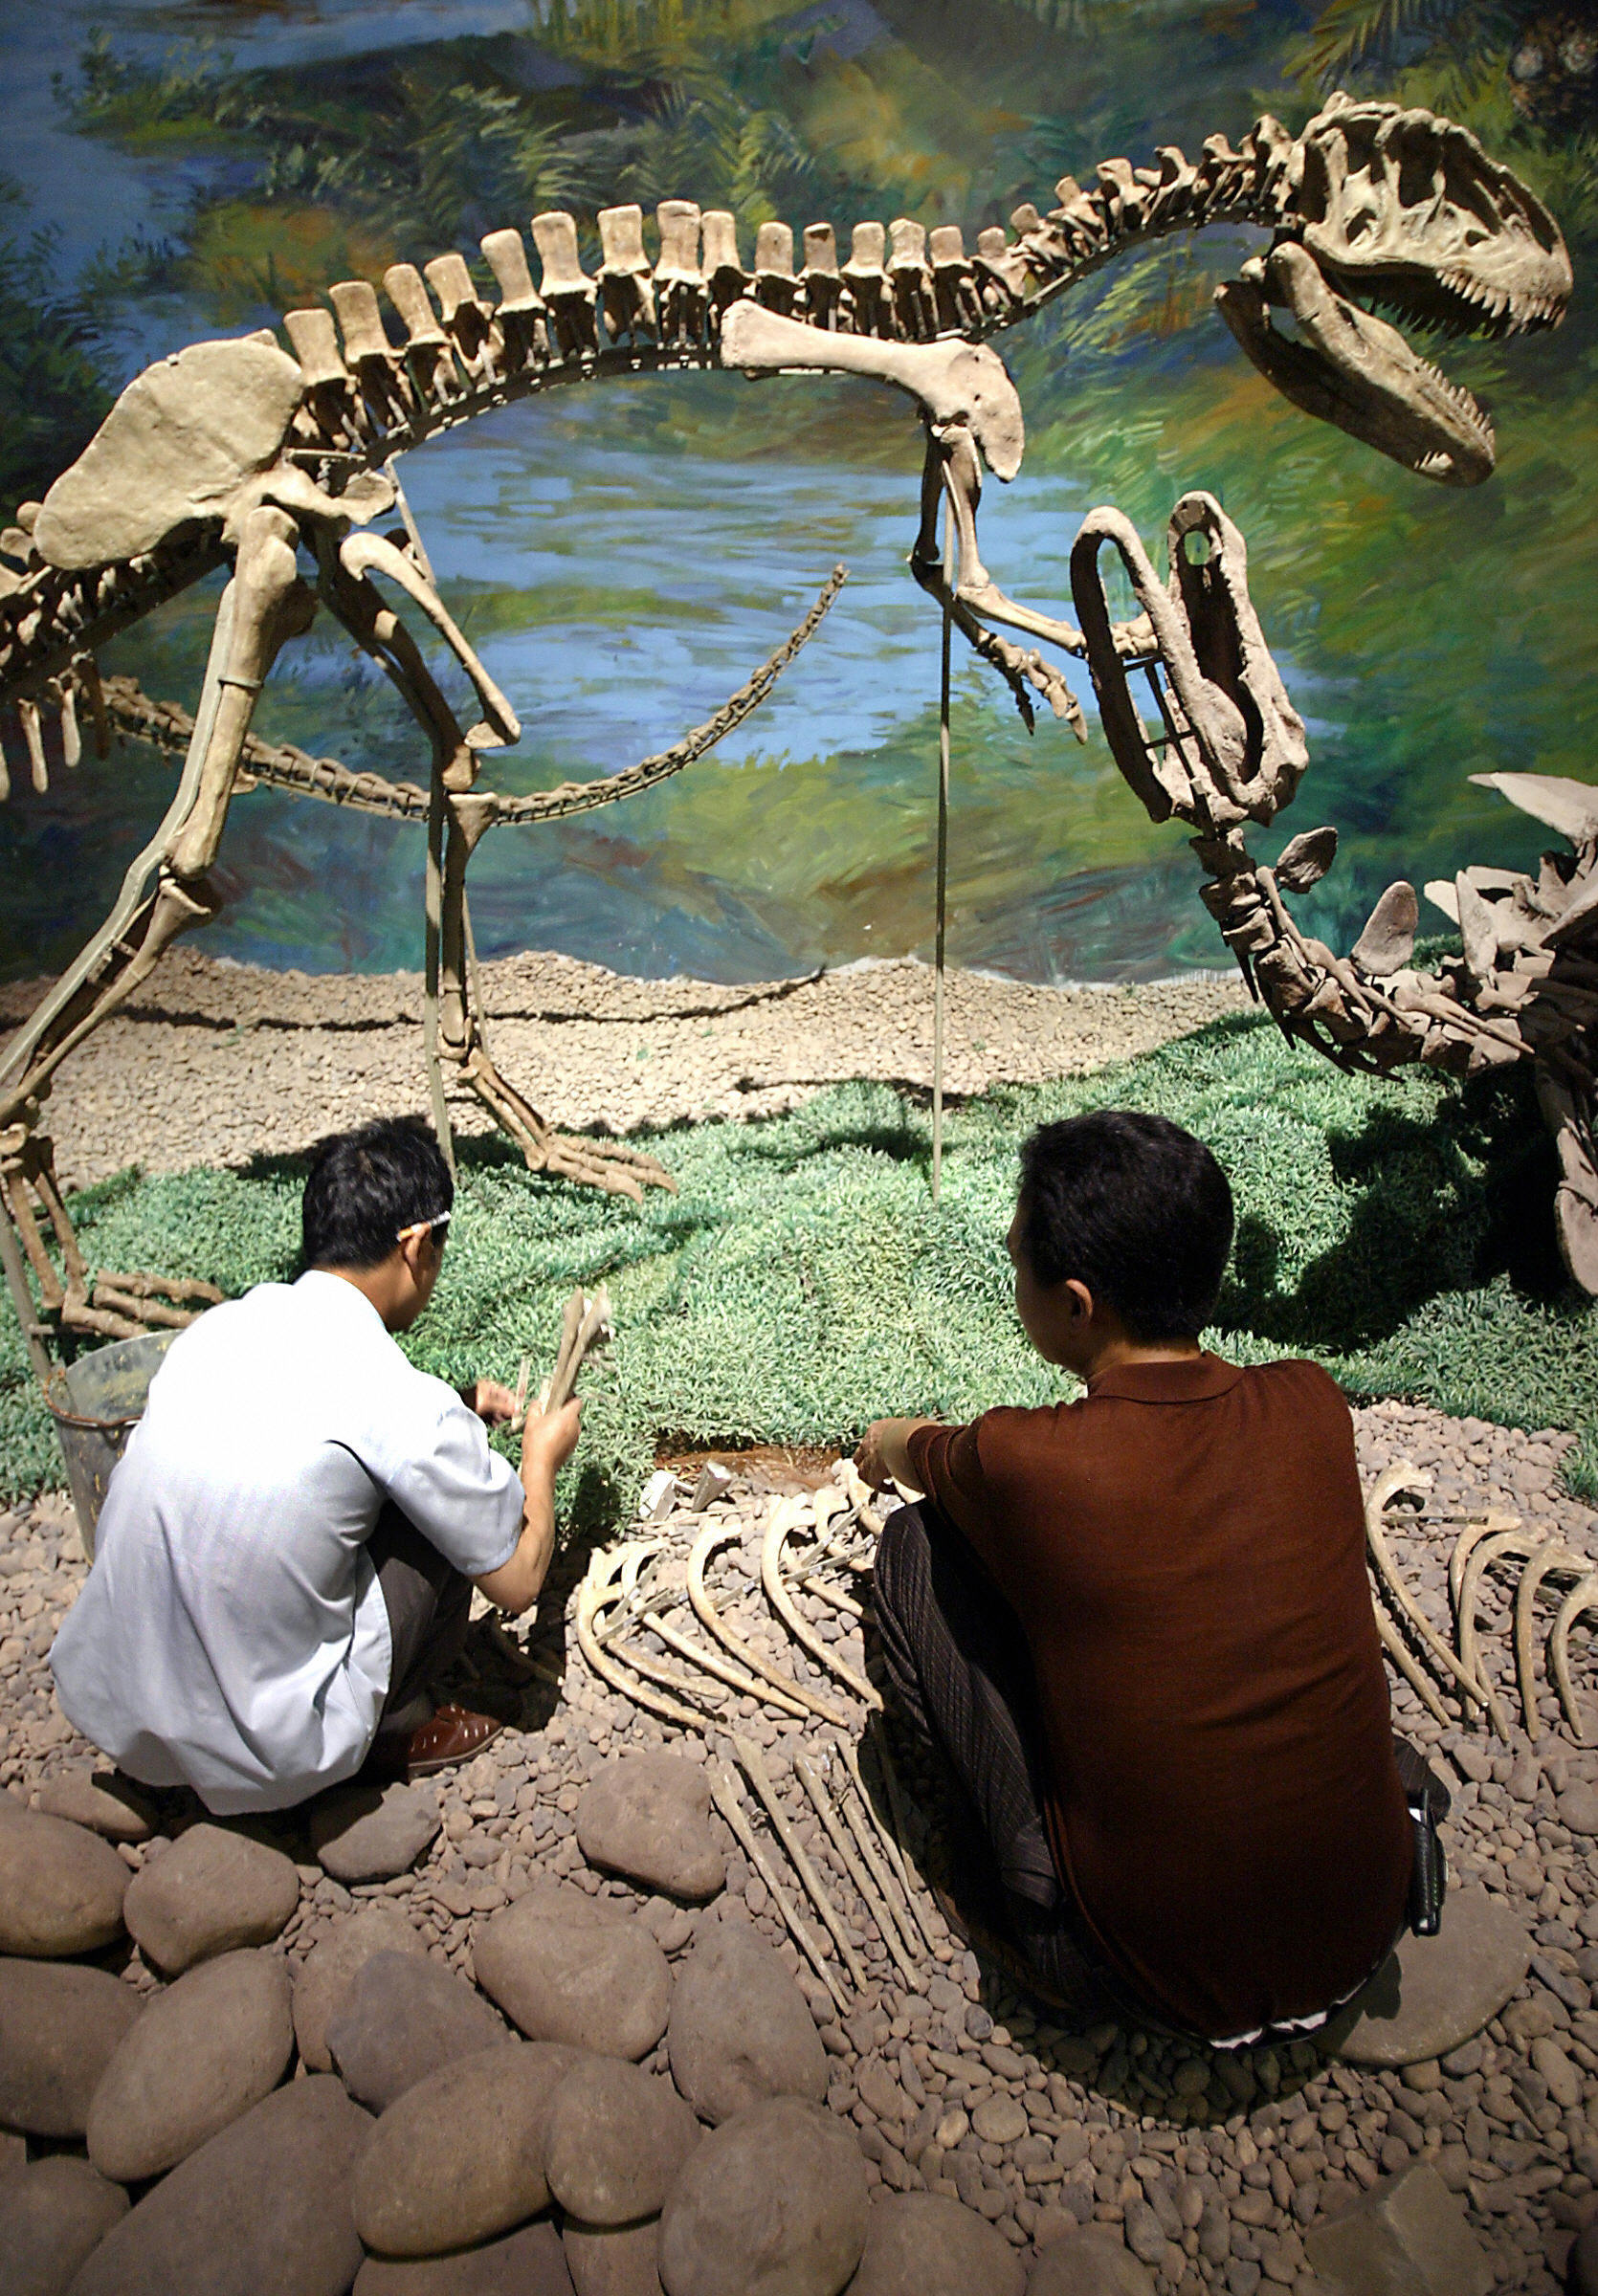 Riesiges Dinosauriergrab in Asien entdeckt